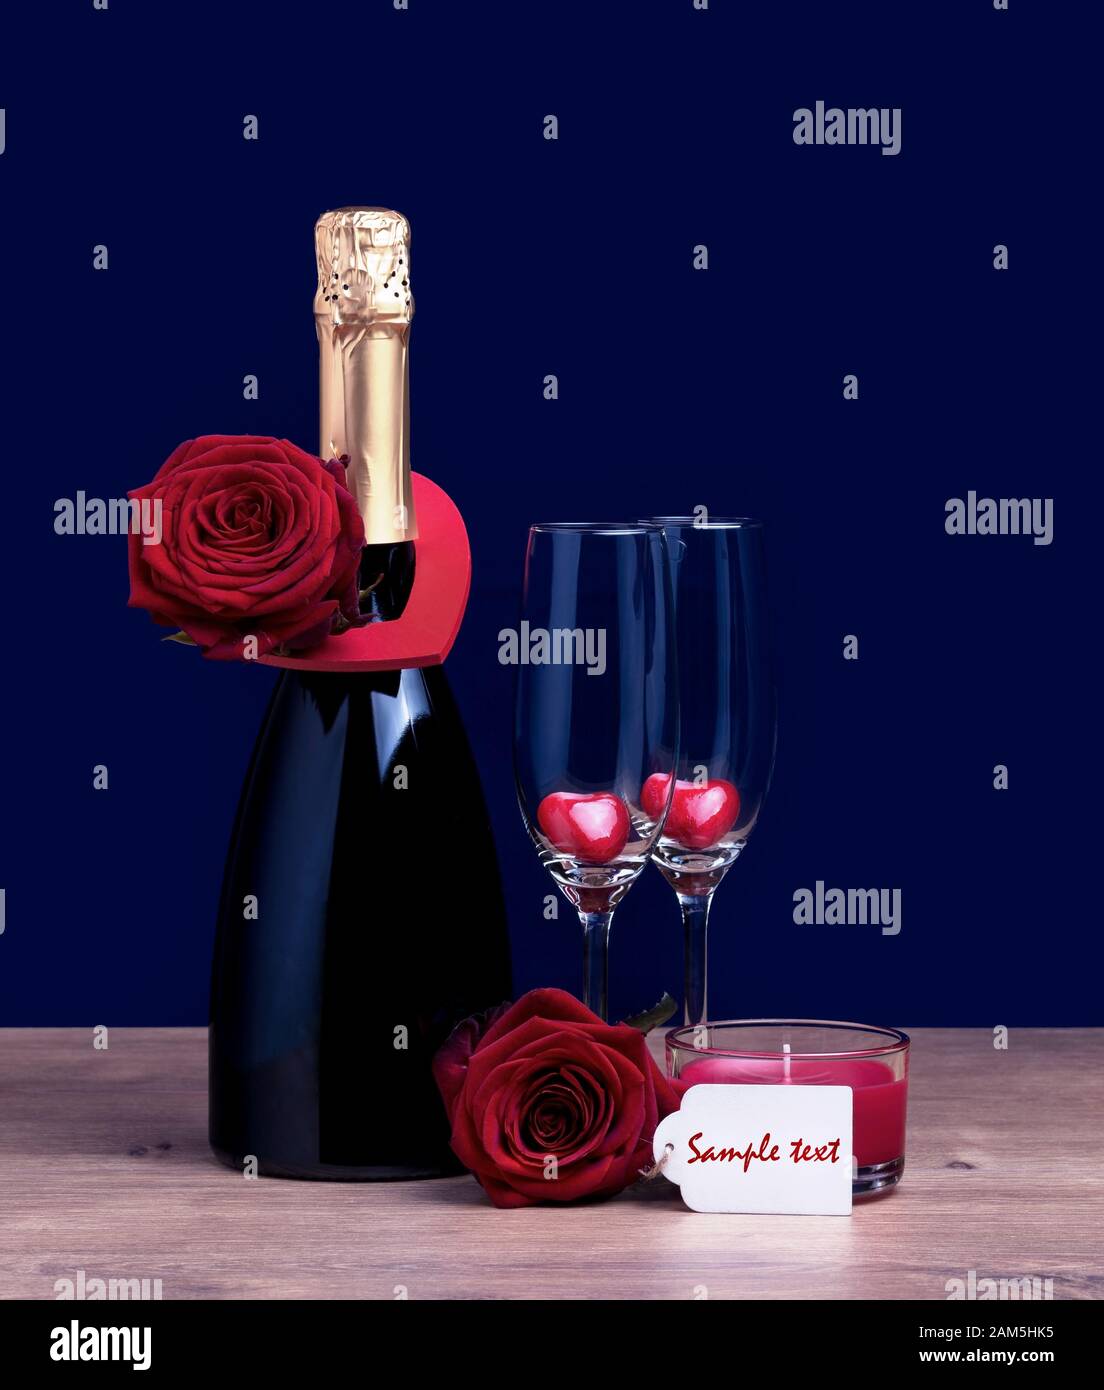 Bouteille de champagne Saint-Valentin deux verres avec coeurs et deux roses. Journée Internationale Des Femmes 8 Mars Concept. Banque D'Images